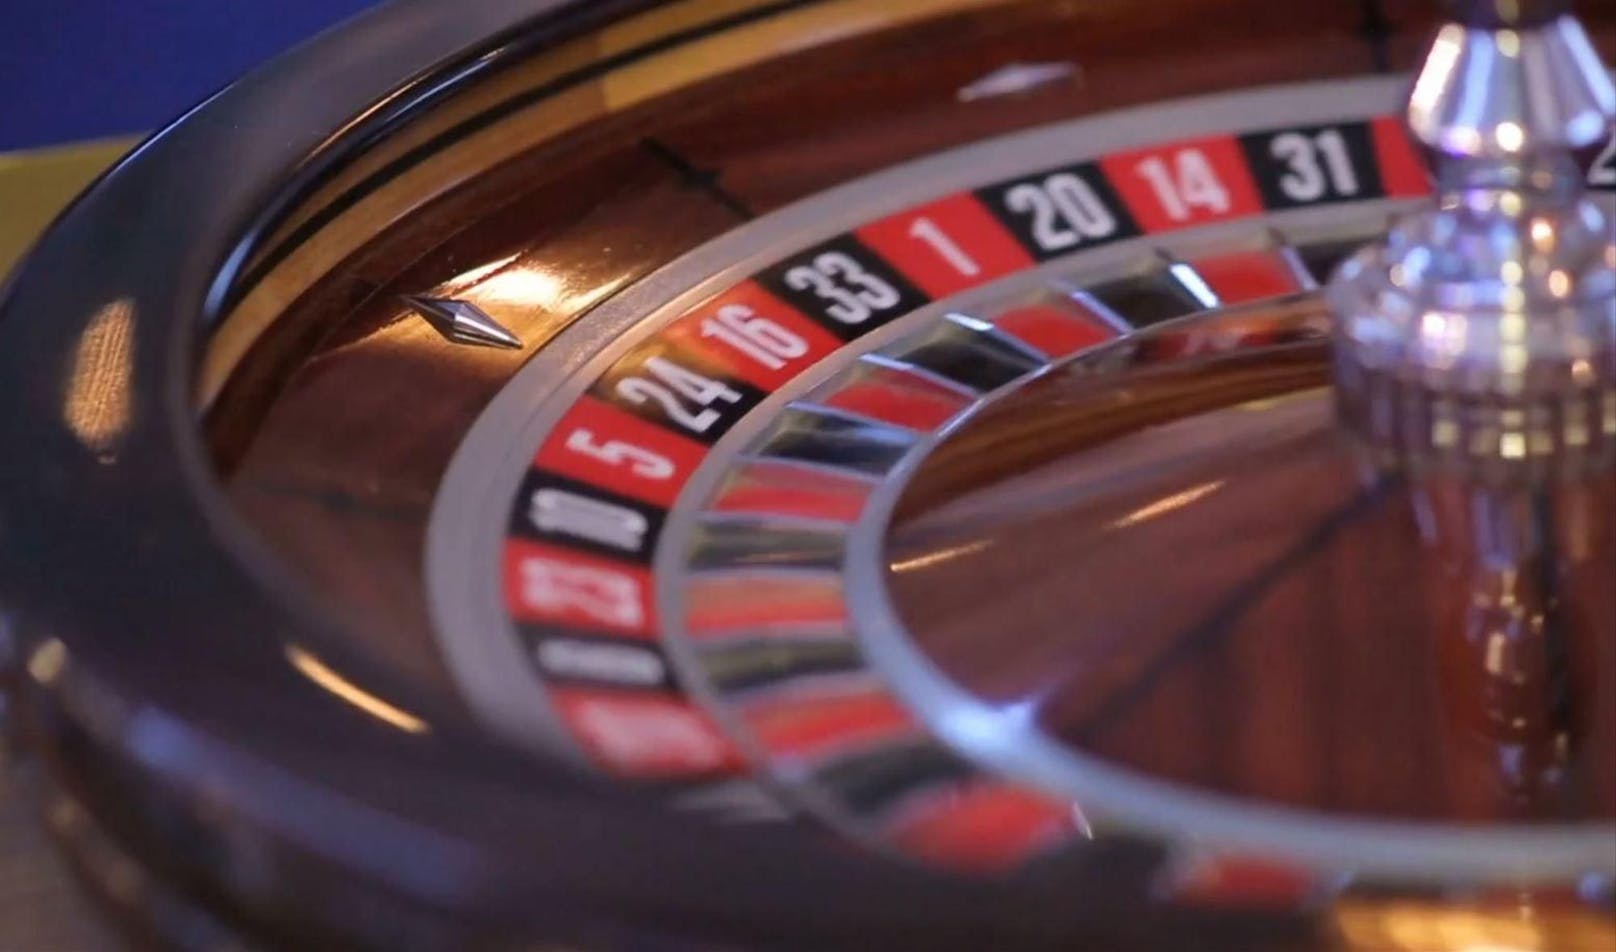 Spielsüchtiger erhält 12.000 Euro von Casino zurück